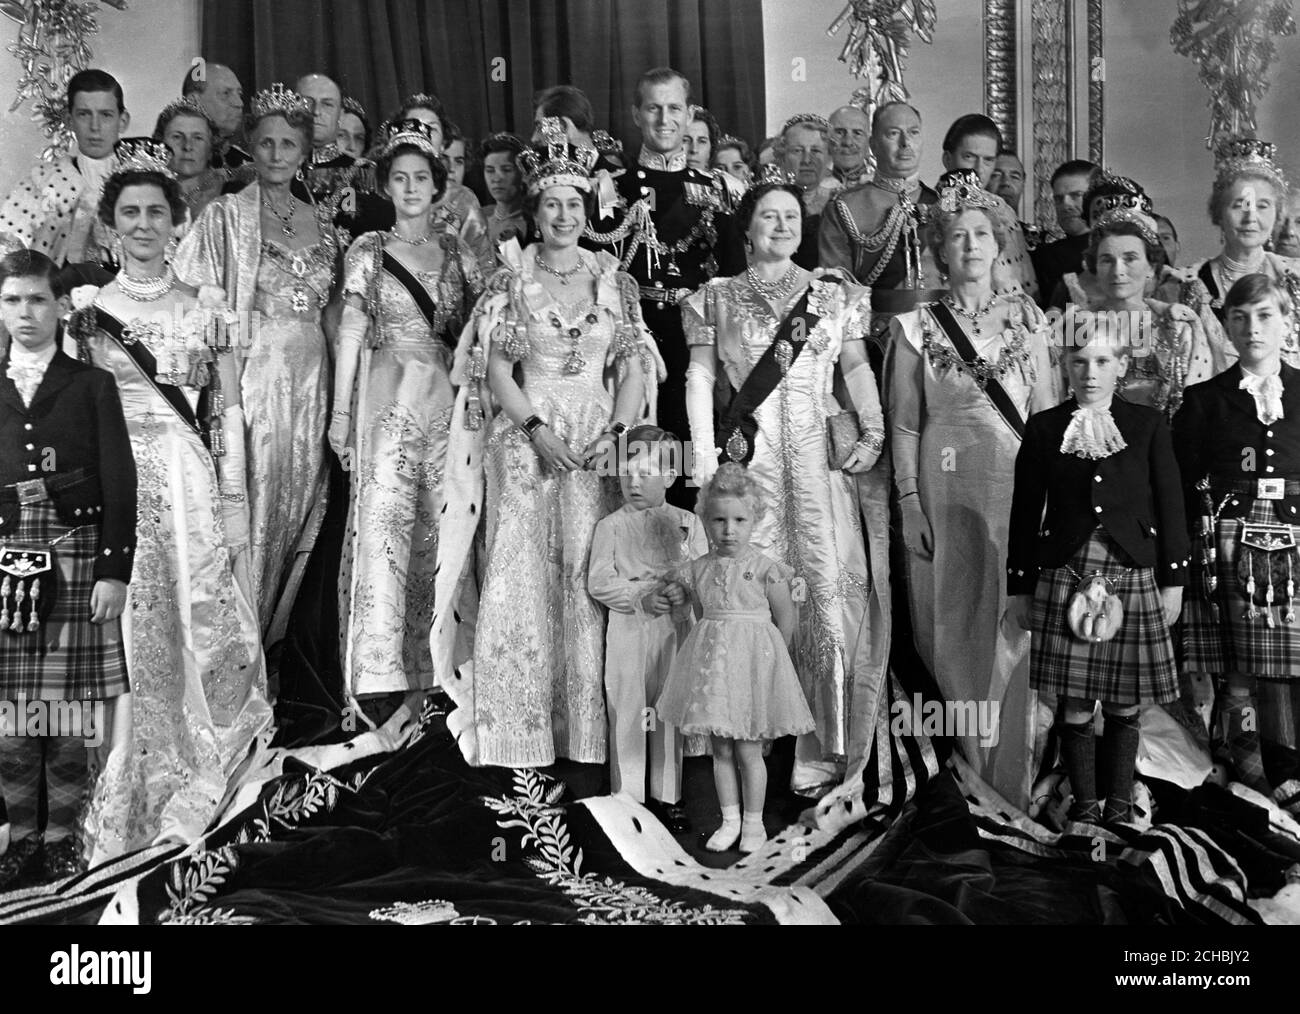 La reine Elizabeth II dans ses robes de couronnement, photographiée avec sa famille et d'autres membres de la famille royale, dans la salle du trône à Buckingham Palace. Banque D'Images